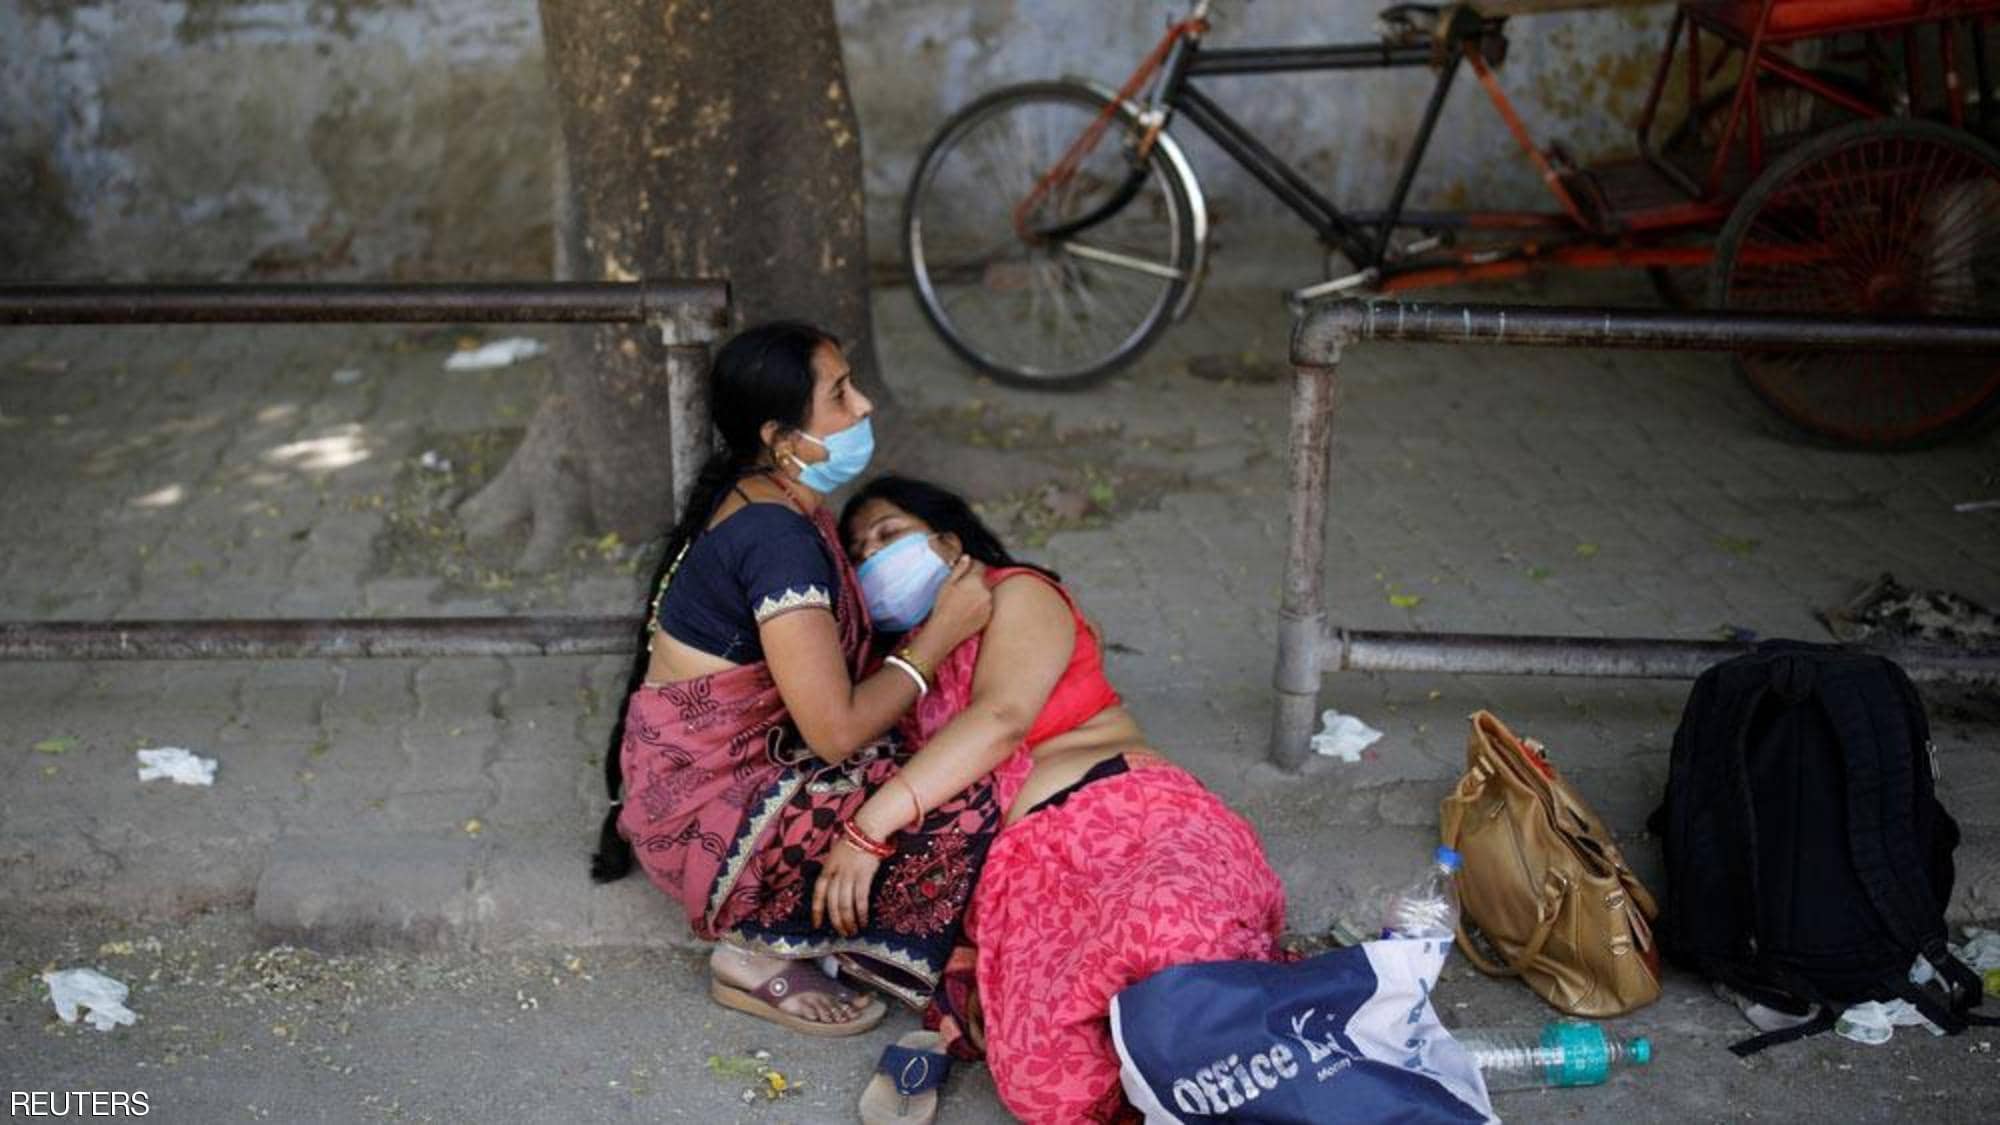 بالفيديو : جثث في الشوارع ومستشفيات عاجزة في الهند بسبب كورونا ( مشاهد قاسية )